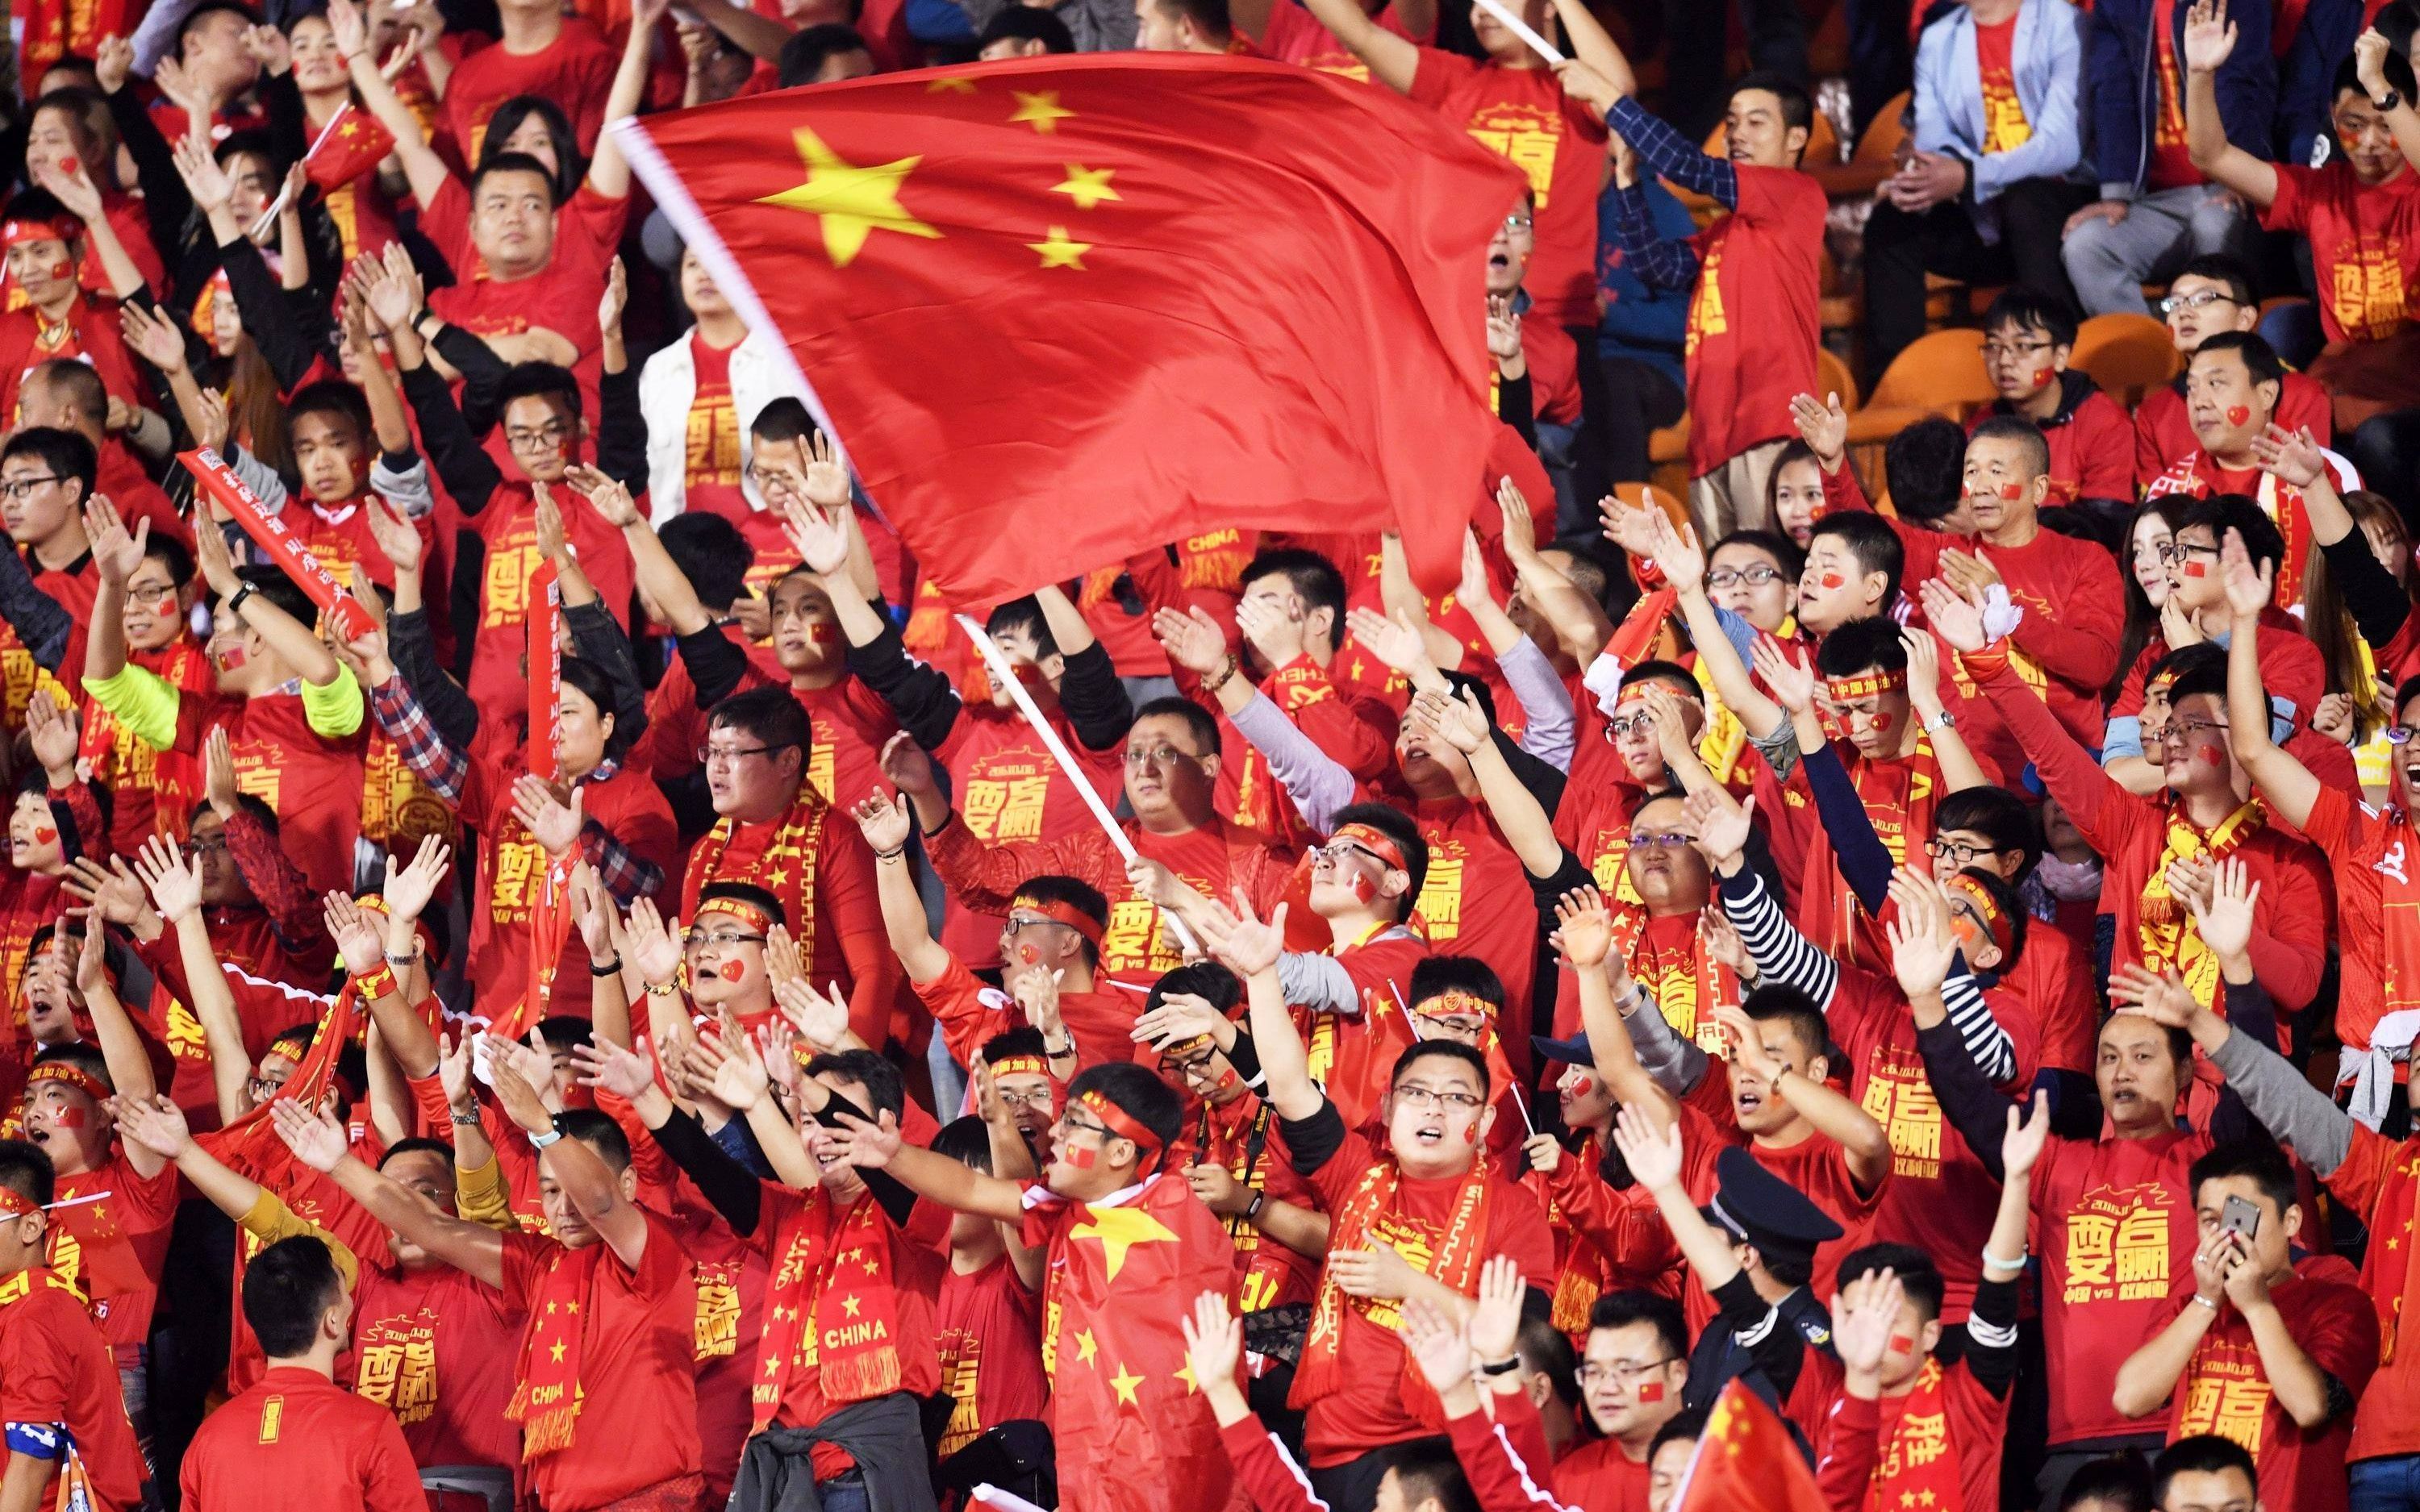 实况足球:中国队征战世界杯夺冠历程的精彩进球集锦